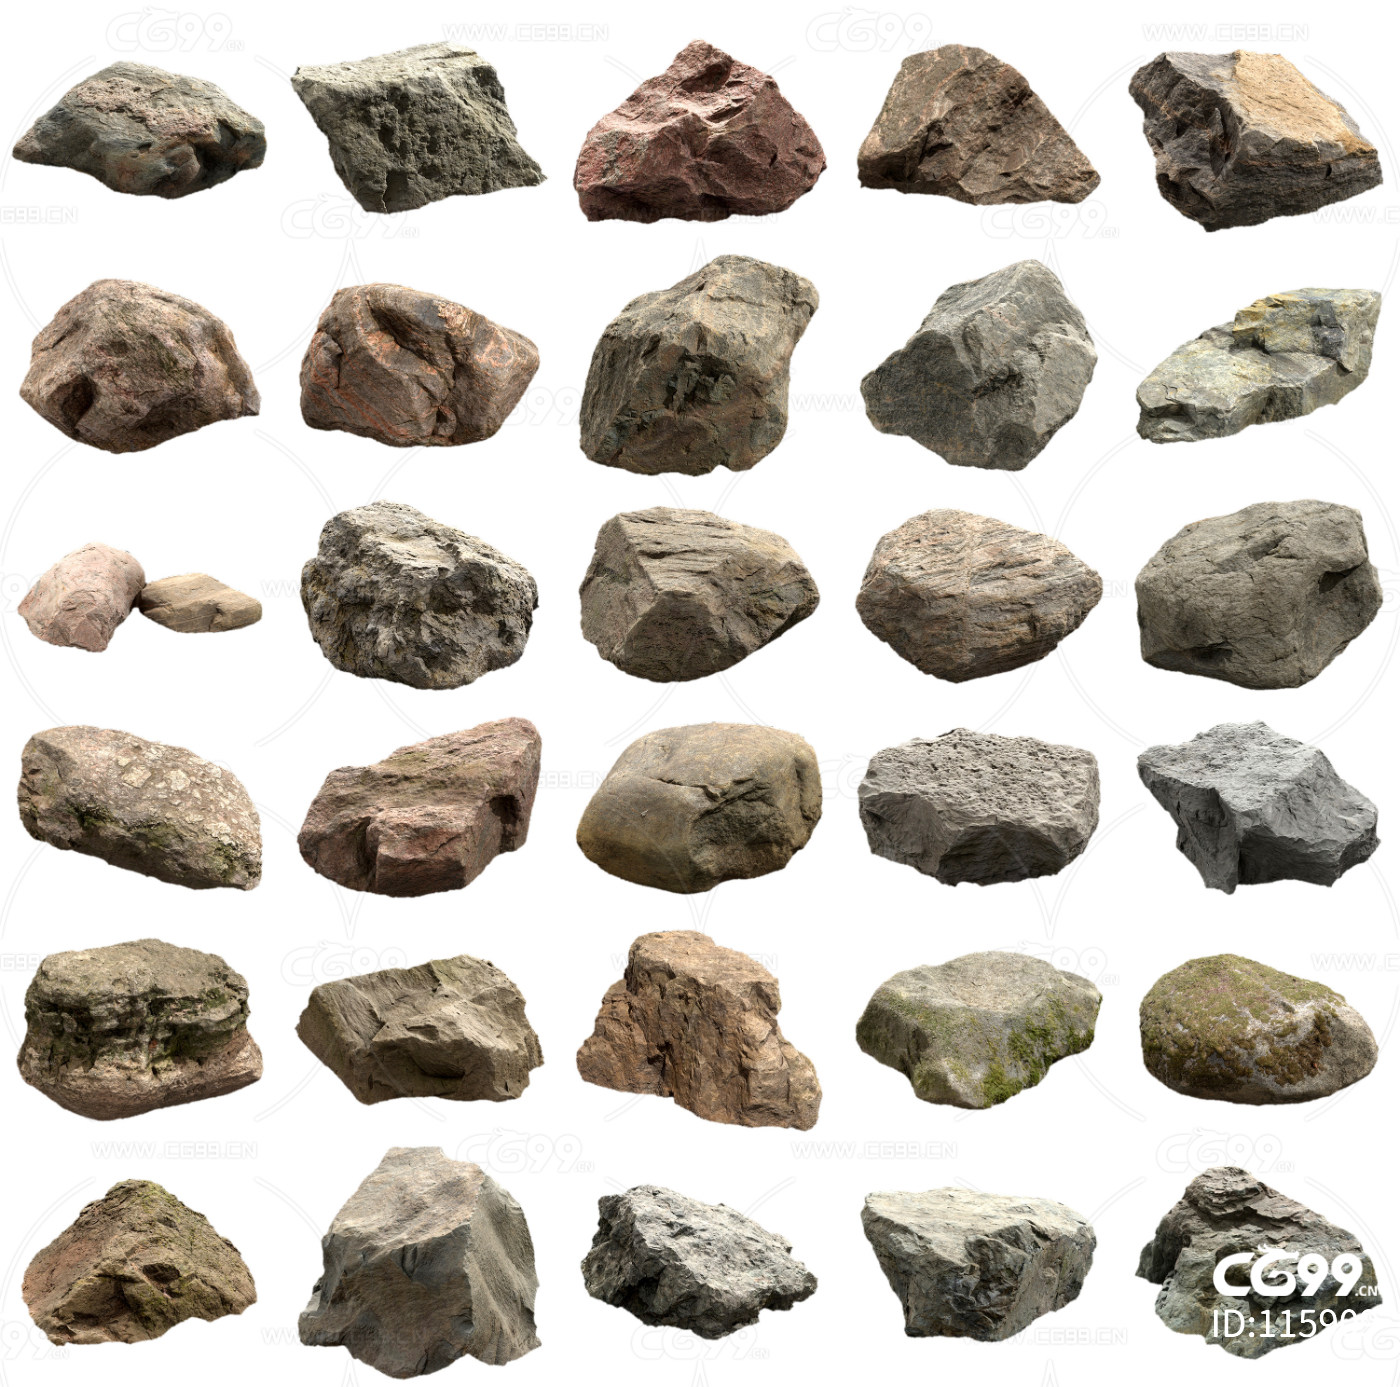 《矿物岩石学》课上的岩石标本|工程图片区 - Powered by phpwind